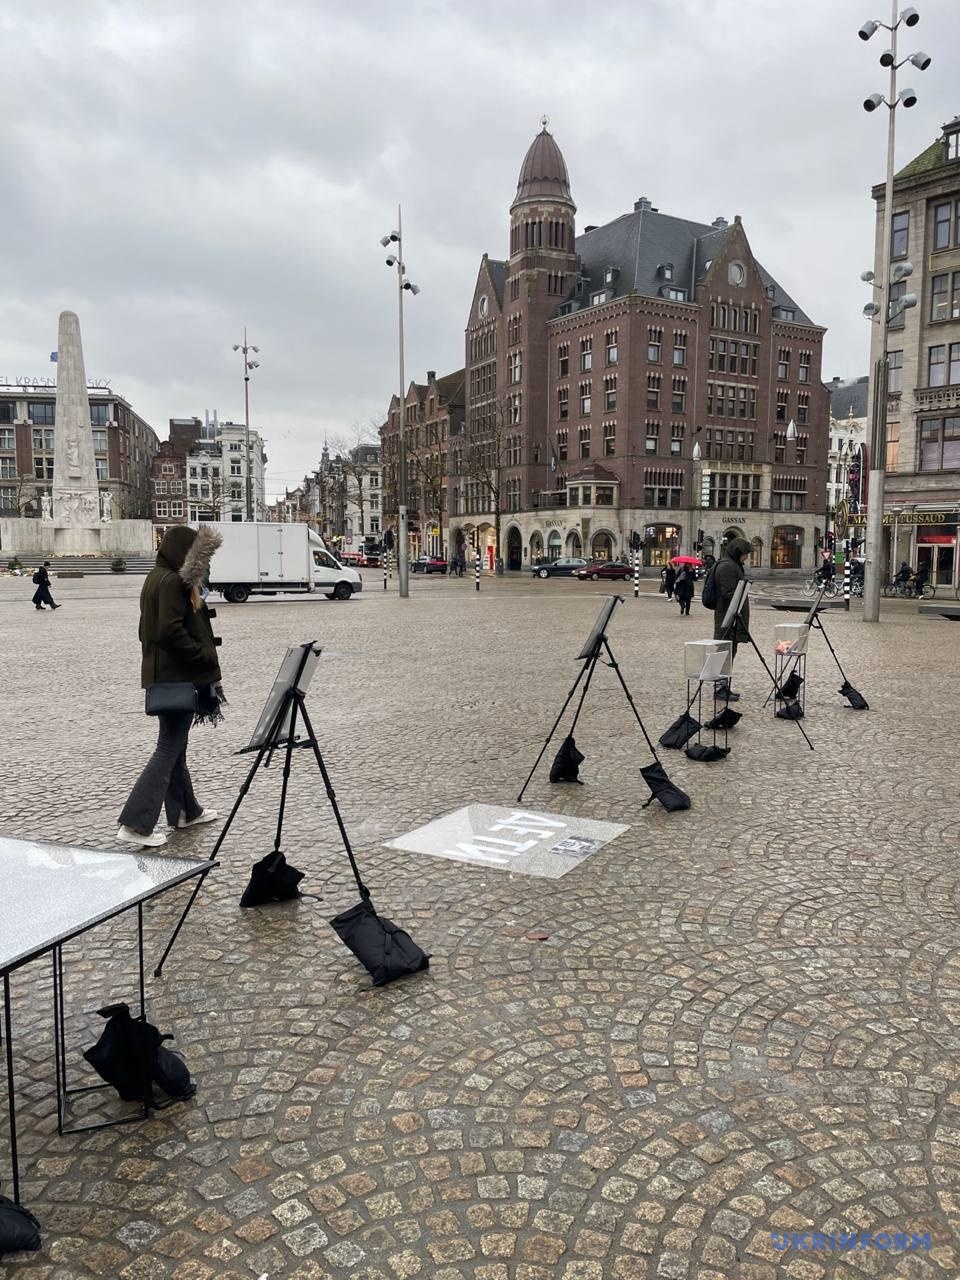 виставка «Тур артефактів» в Амстердамі